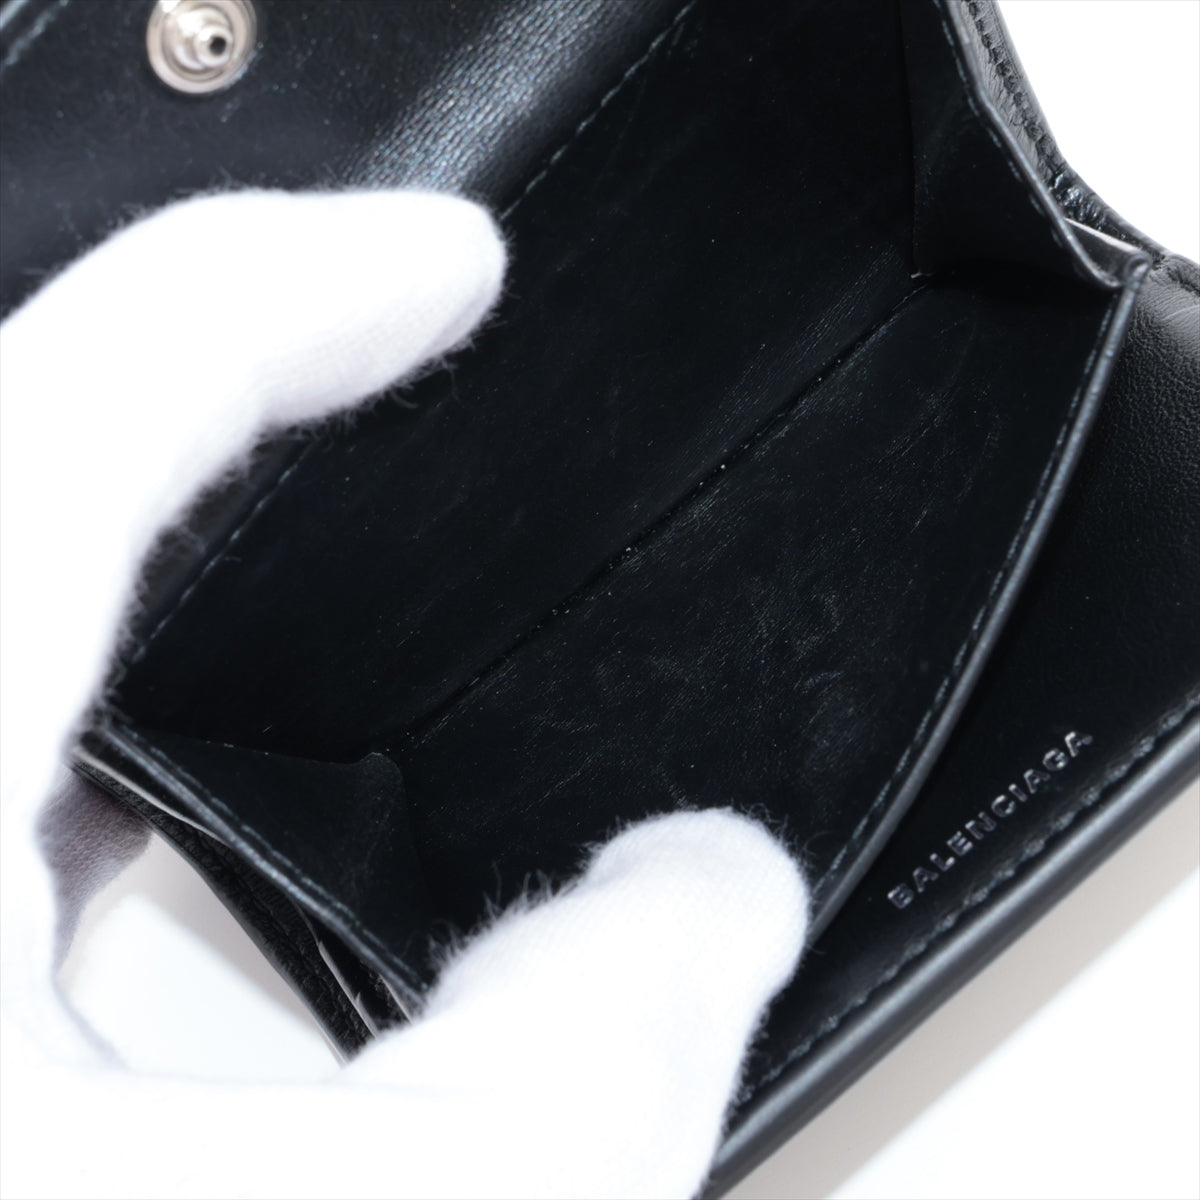 Balenciaga 615653 Leather Compact Wallet Black